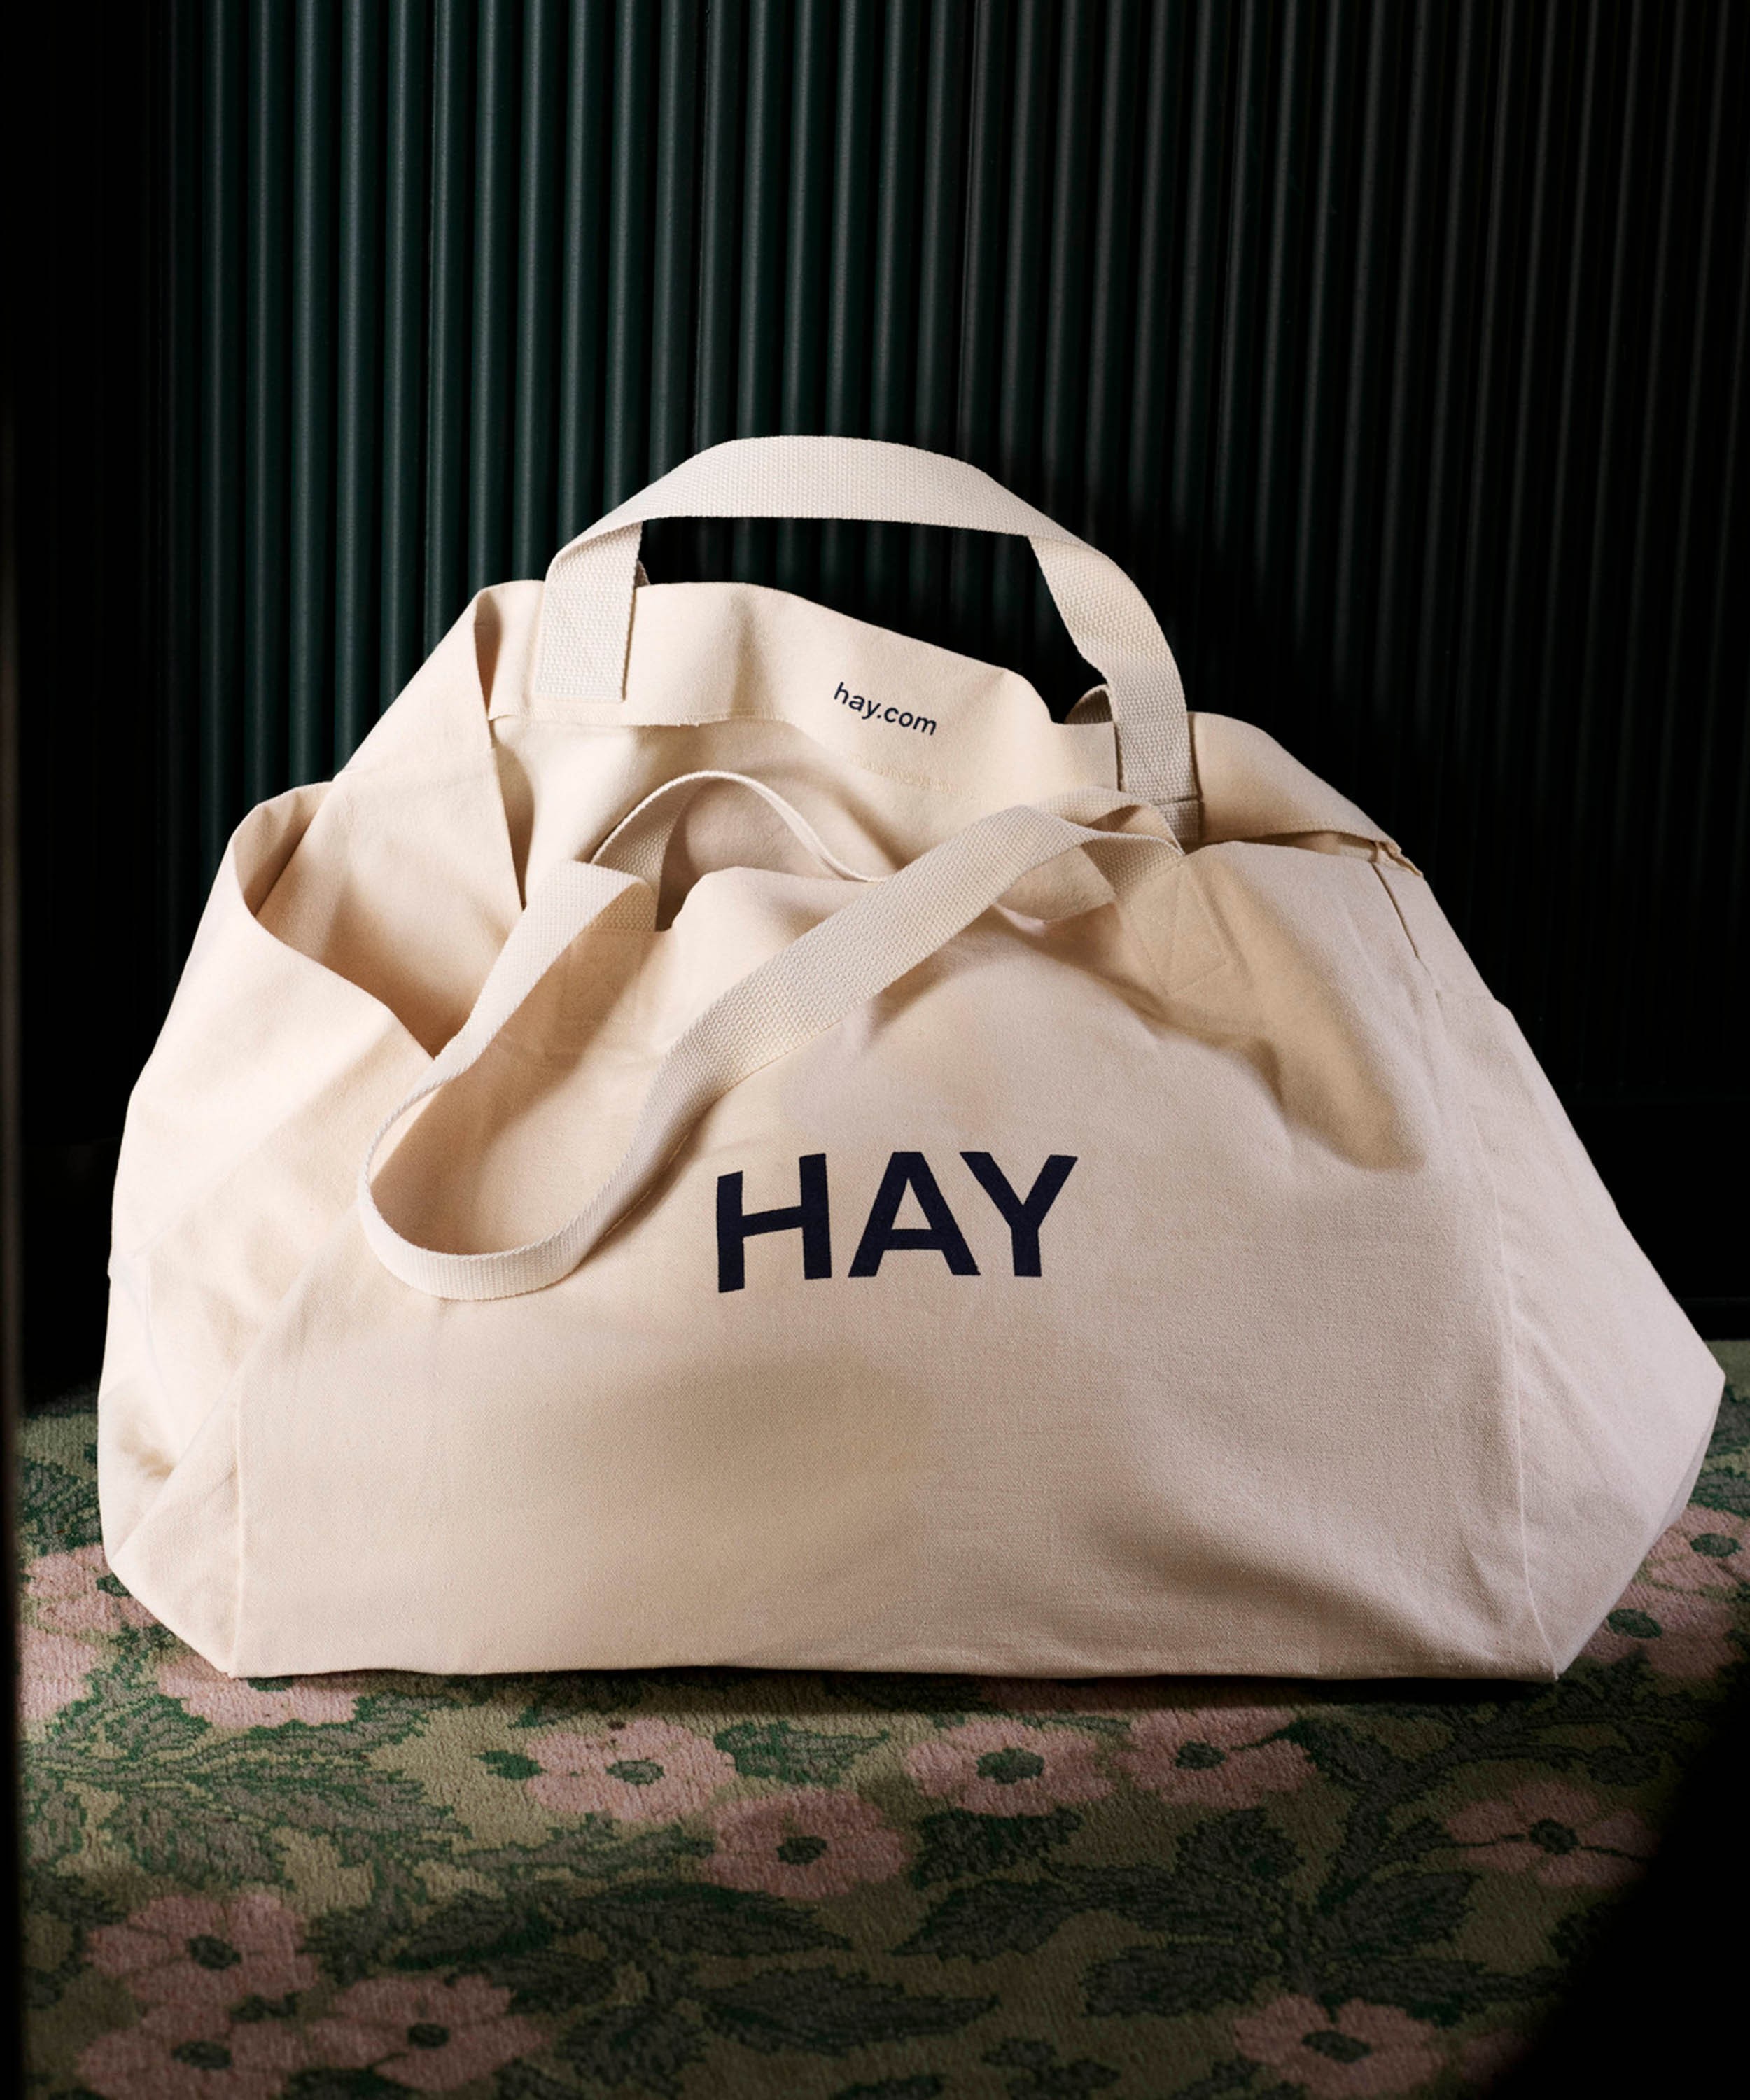 Weekend Bag – HAY